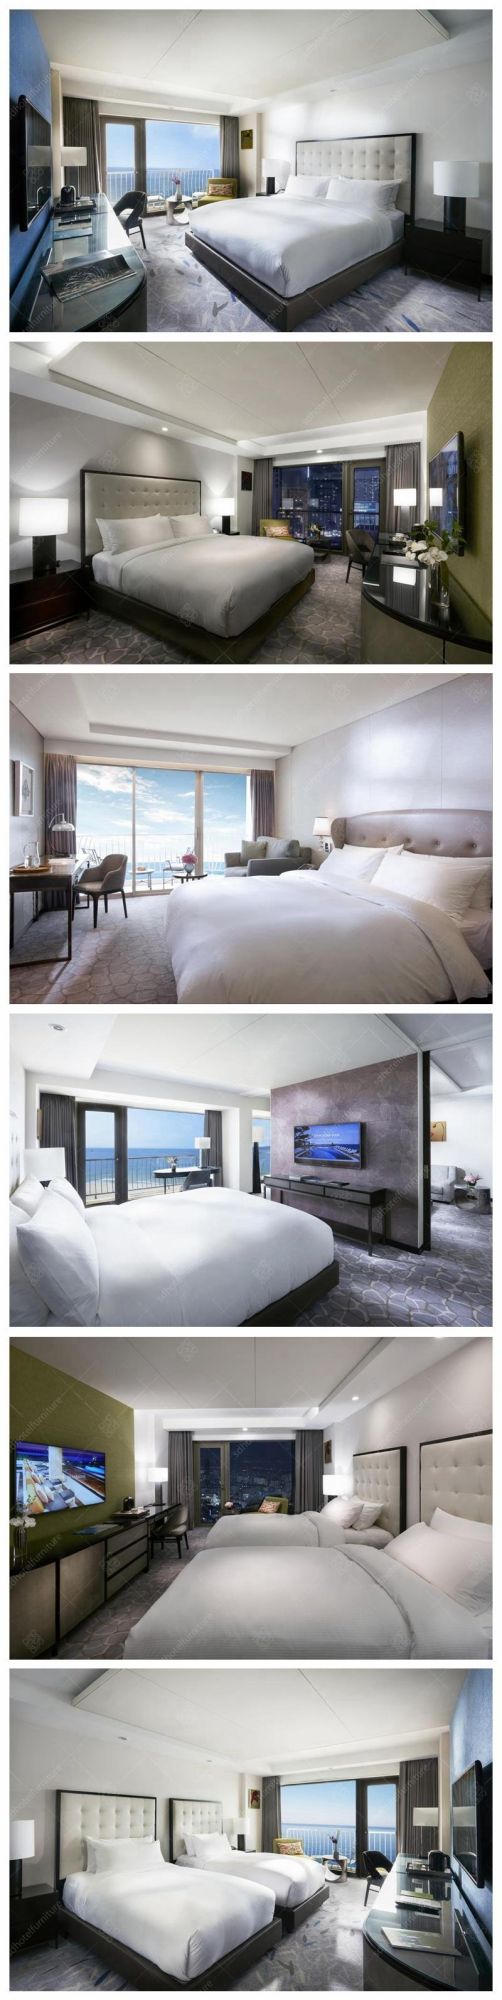 Luxury Design Wooden Modern Hotel Bedroom Furniture Sets for Sale